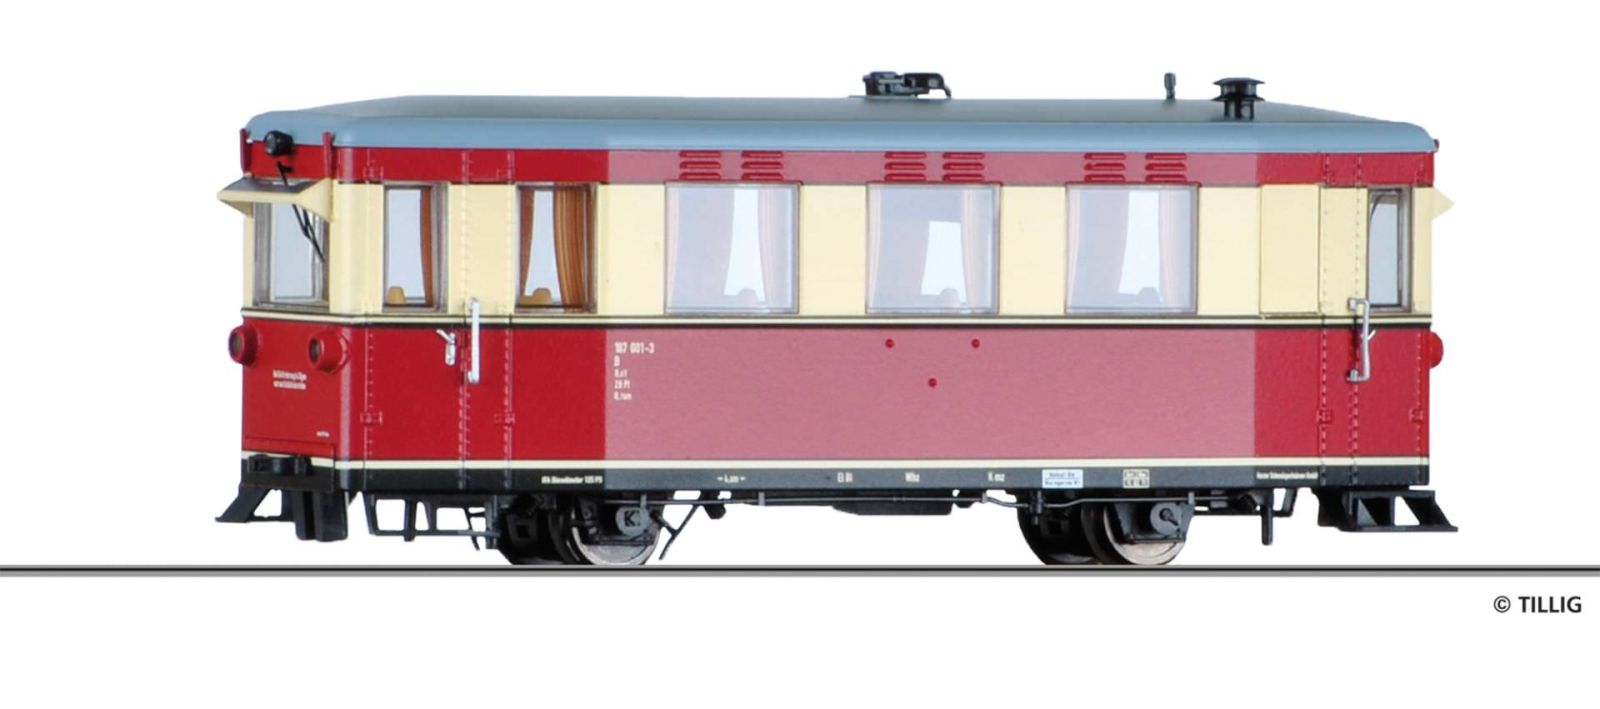 Rail car HSB